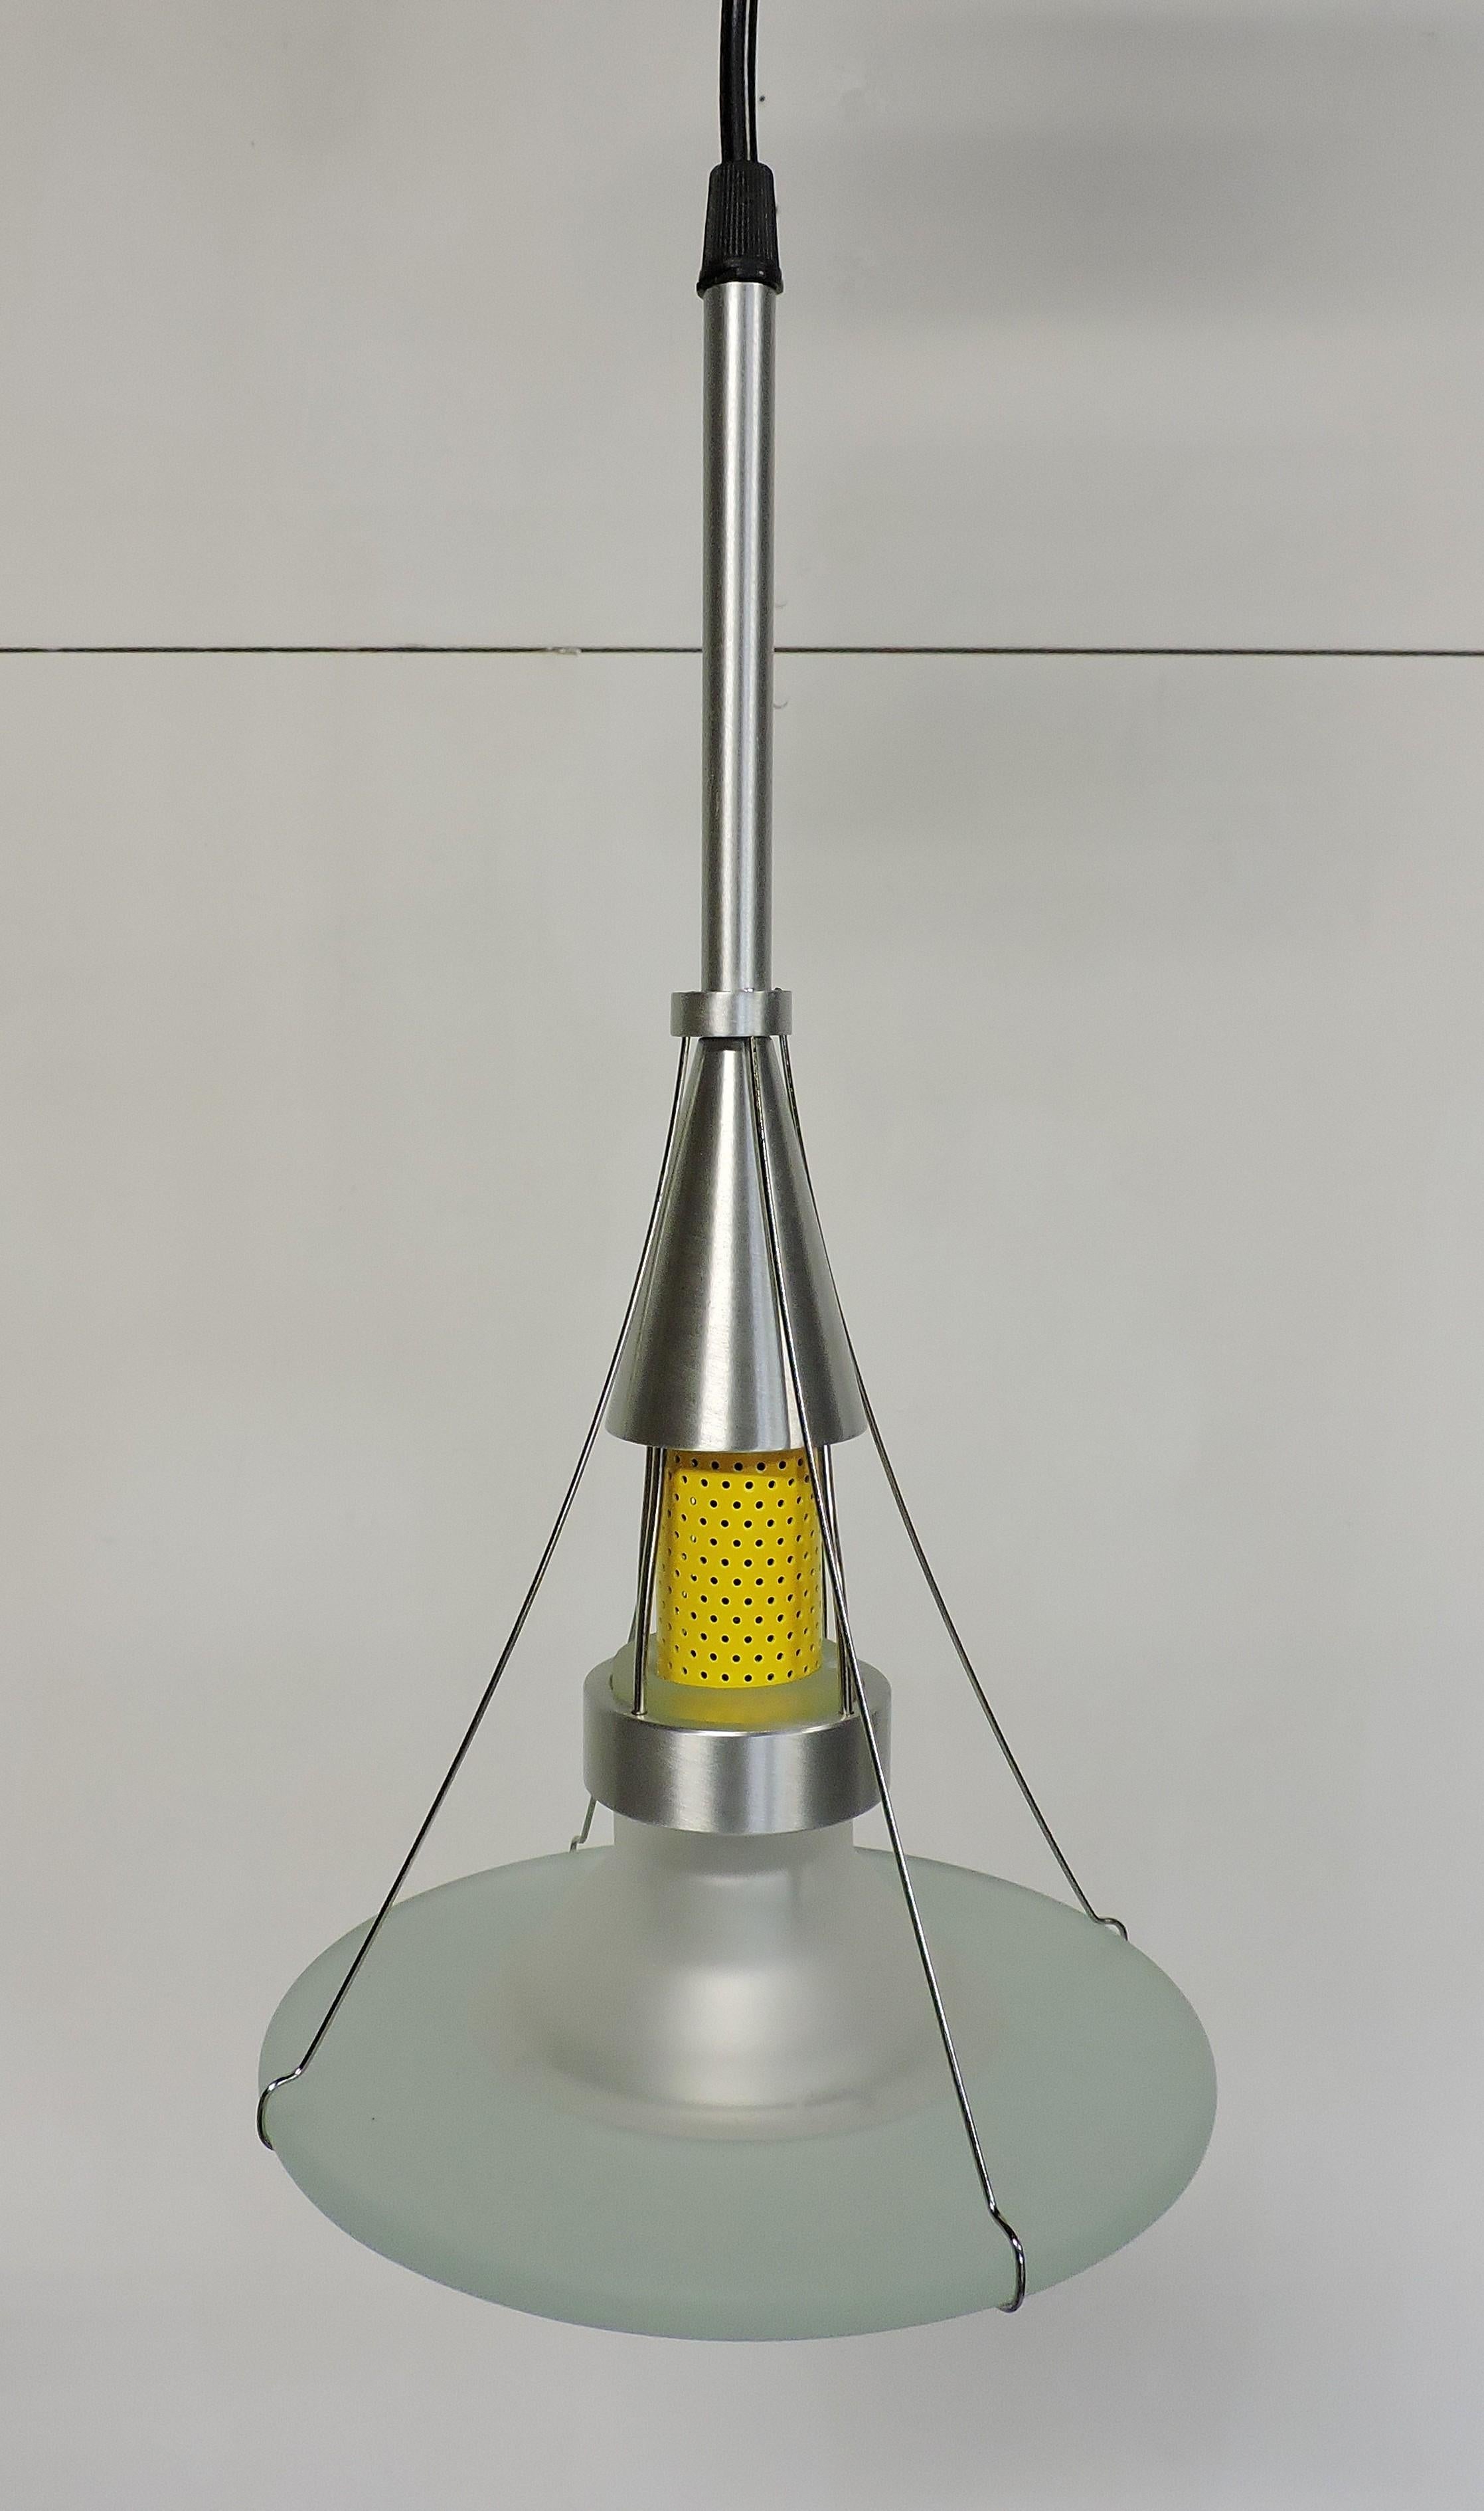 Robert Sonneman NOS Ventilator Series Postmodern Pendant Light For Sale 1